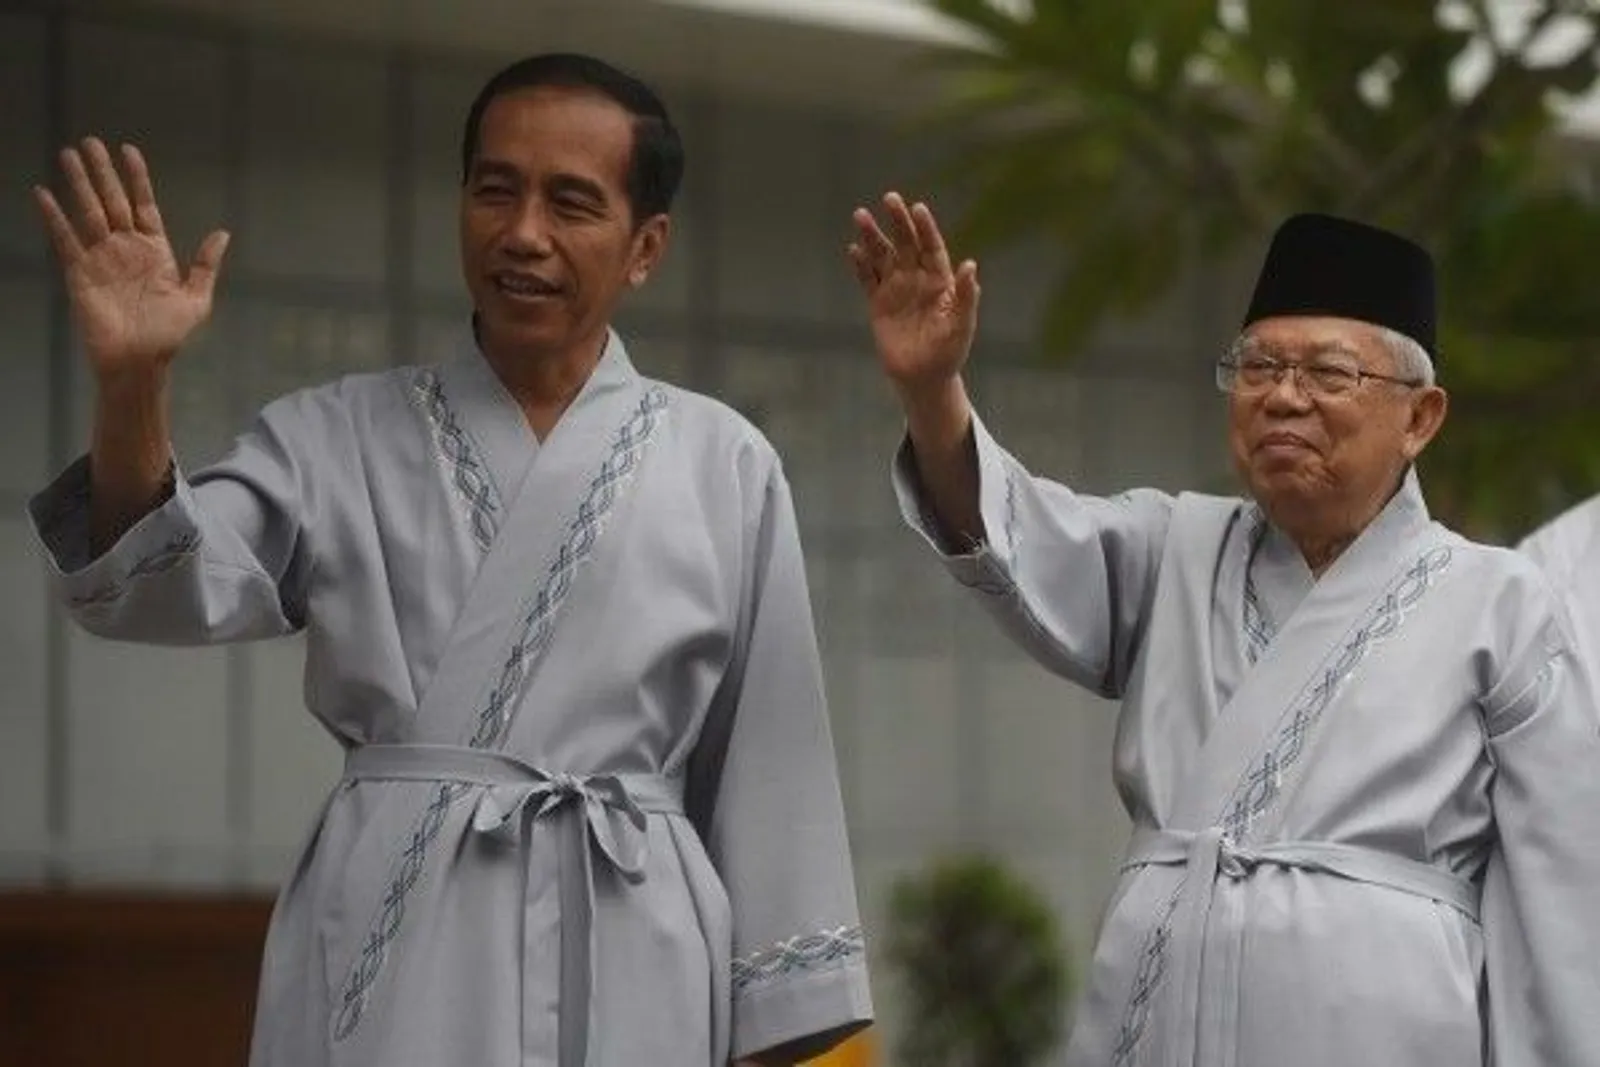 Sampai Bidakara 20 Menit, Jokowi Bilang "Mantul!"